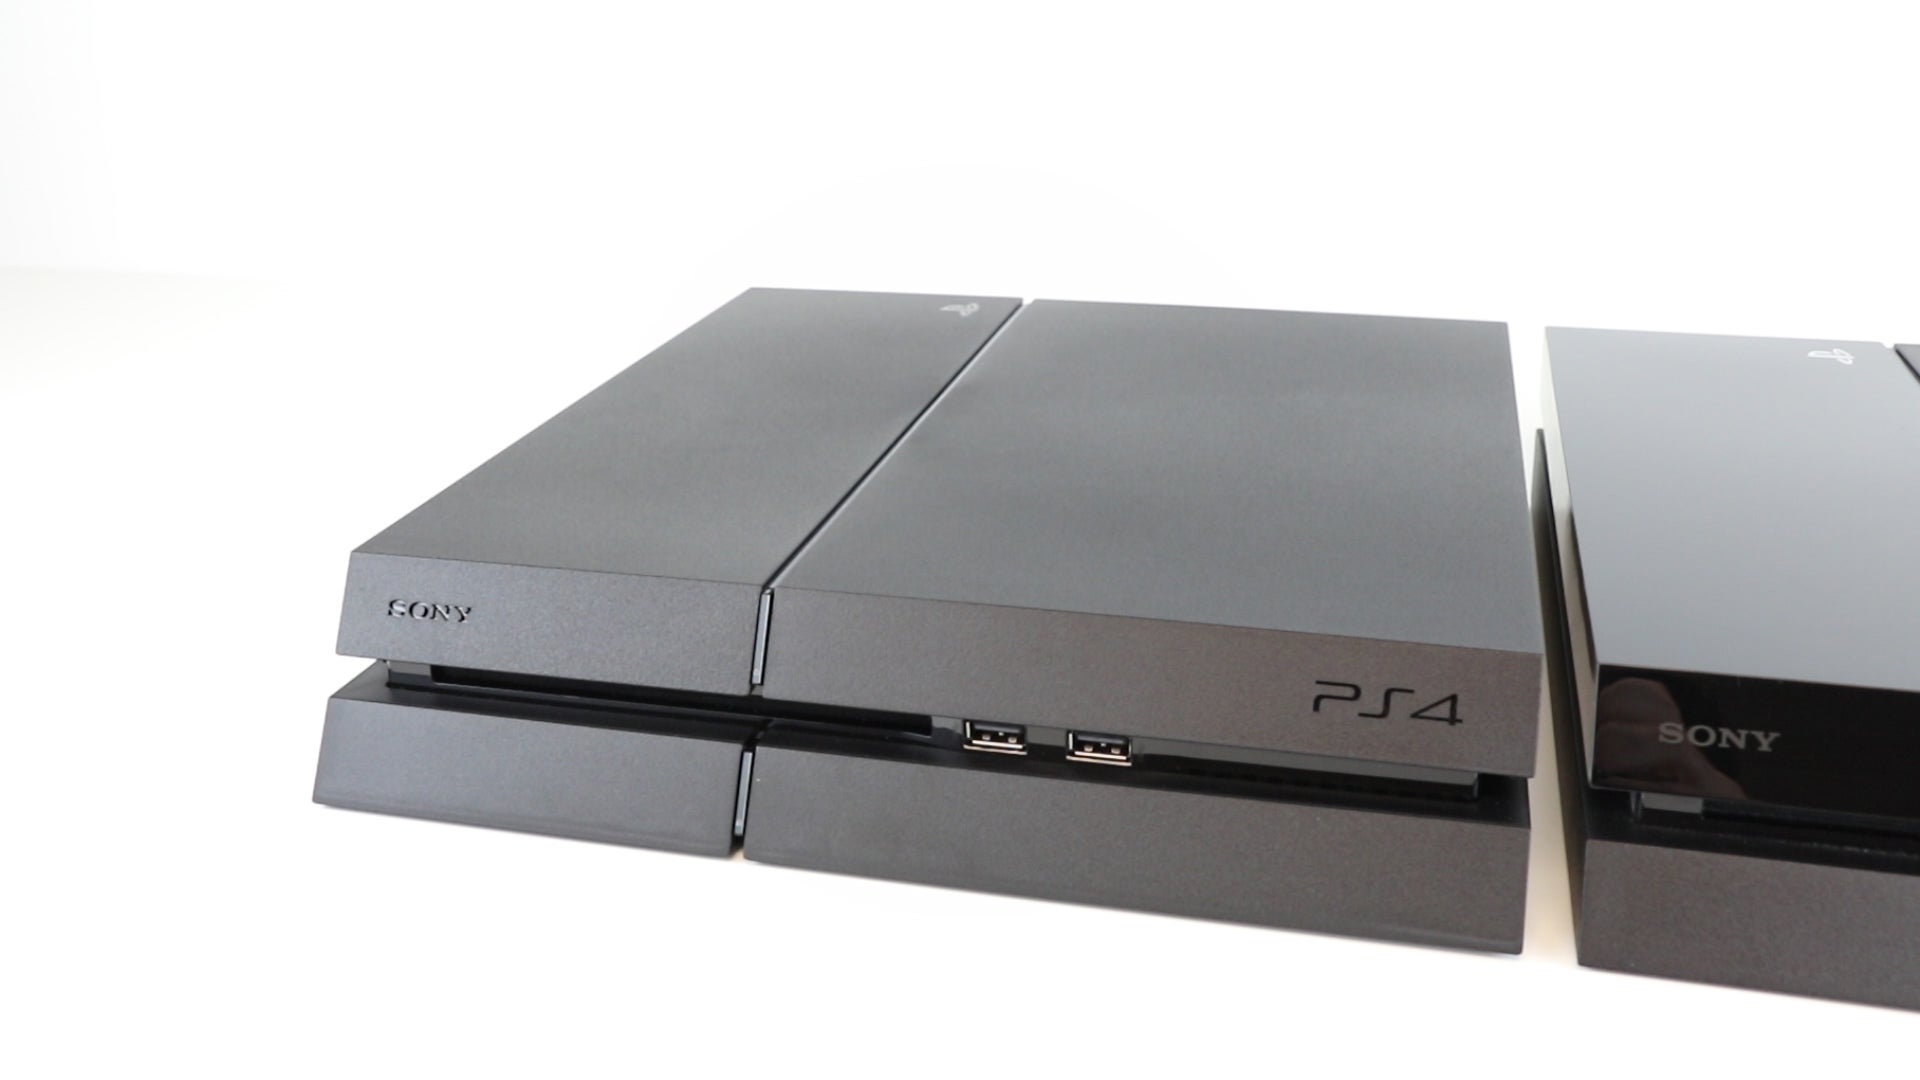 Análisis de la nueva revisión CUH-1200 de PlayStation 4 | Eurogamer.es